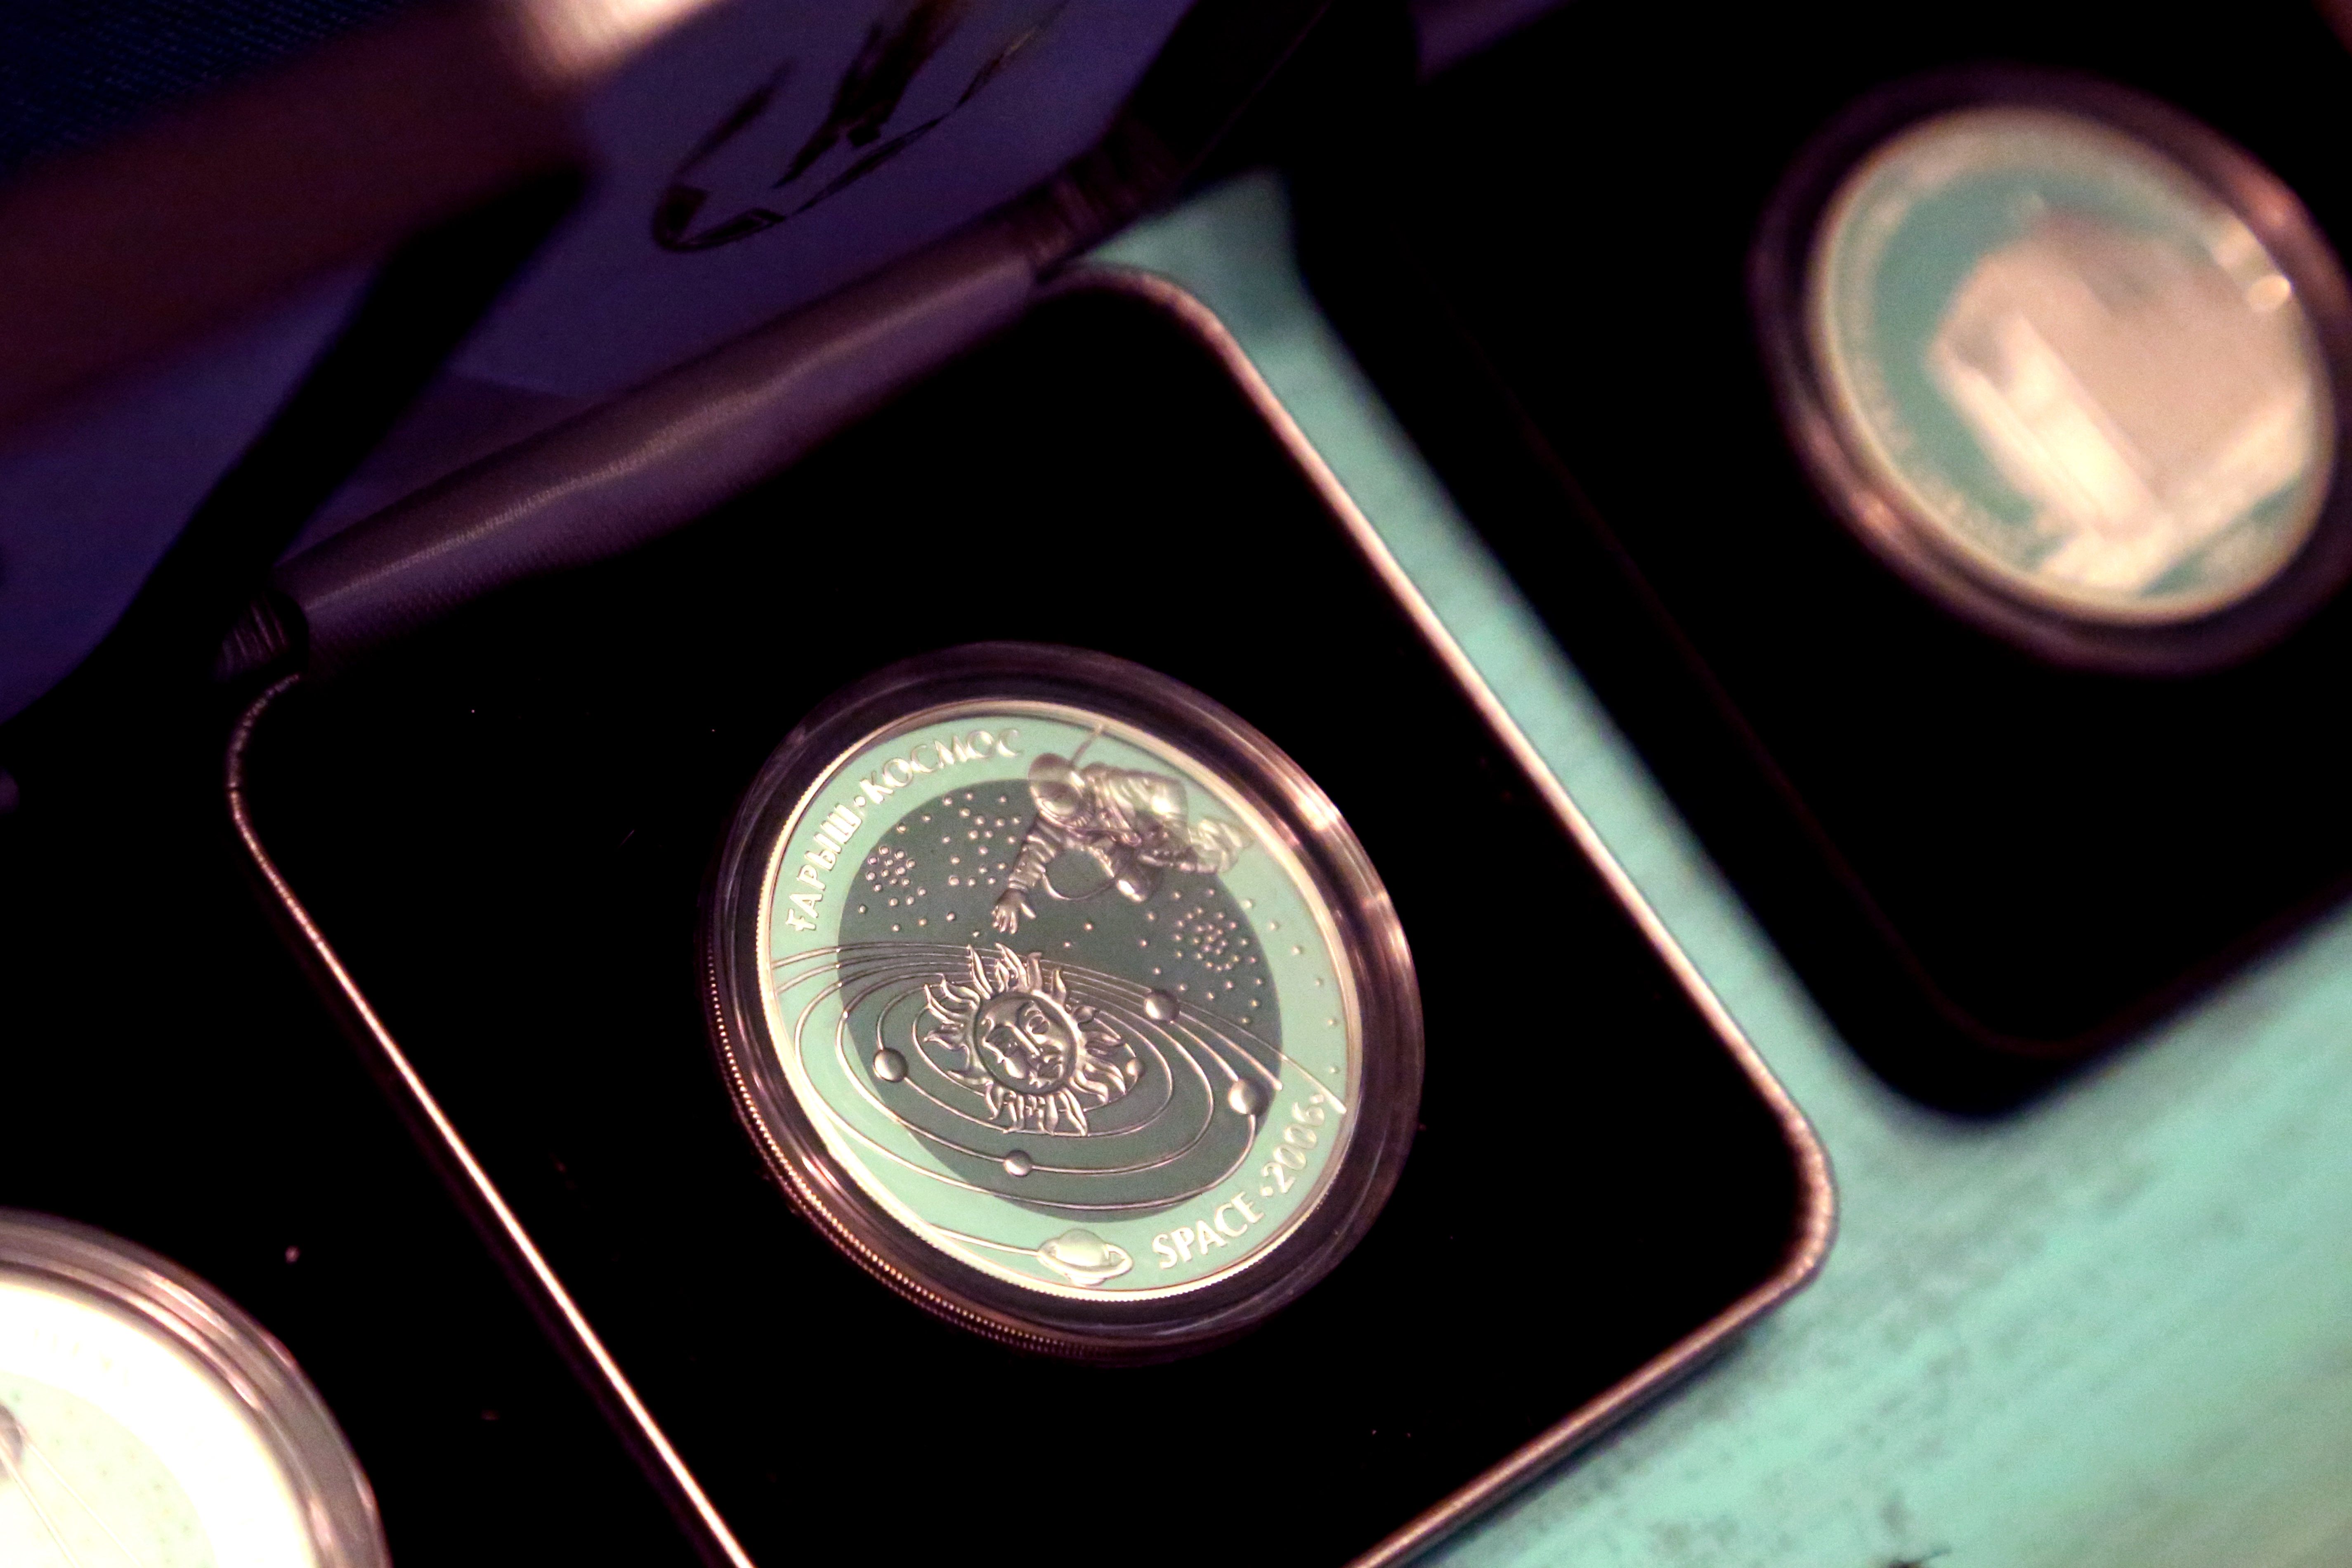 Серебряные монеты из серии «Достояние республики» пользуются особым спросом. Эта серия включает 5 комплектов монет: «Иссыкский вождь», «Байконур», «Петроглифы Тамгалы» (тампопечать), «Родина яблок» и «Петроглифы Тамгалы» (позолота). Монеты «Байконур» можно приобрести по 9 тыс. 300 тенге, «Петроглифы Тамгалы» (тампопечать) – по 11 тыс. 800 тенге. 
Монеты «Петроглифы Тамгалы» (позолота) имеют номинал 500 тенге, они были выпущены в обращение в конце декабря 2012 года. Эта монета не круглая, как большинство монет Национального банка РК, имеет форму четырехгранника. Данное произведение искусства продается по 6 тыс. 900 тенге. По периметру монеты, на стилизованном изображении каменной поверхности, начертаны петроглифы археологического ландшафта Тамгалы. На оборотной стороне можно увидеть изображение петроглифа «Солярное божество» с проросшим сквозь трещину в камне цветком. Изображение цветка позолоченное. Монета изготовлена из серебра 925 пробы, весит 24 грамма, тираж – 5 тыс. штук.  